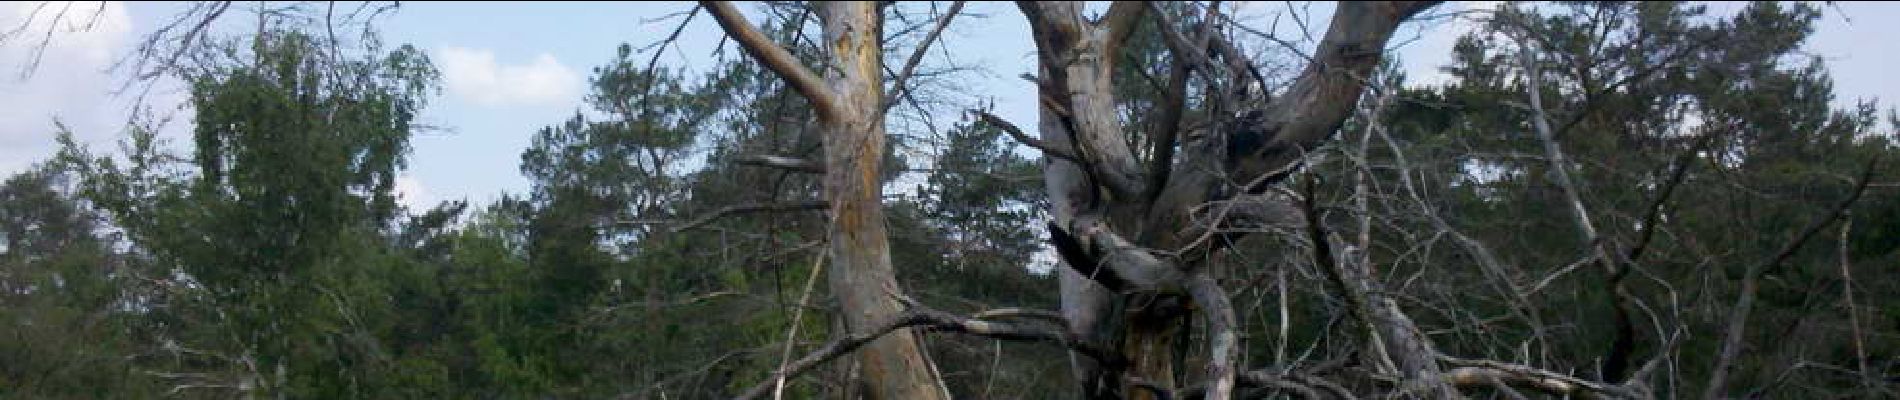 POI Fontainebleau - 06 - Un bel arbre mort, témoin d'un incendie qui a ravagé cette zone - Photo